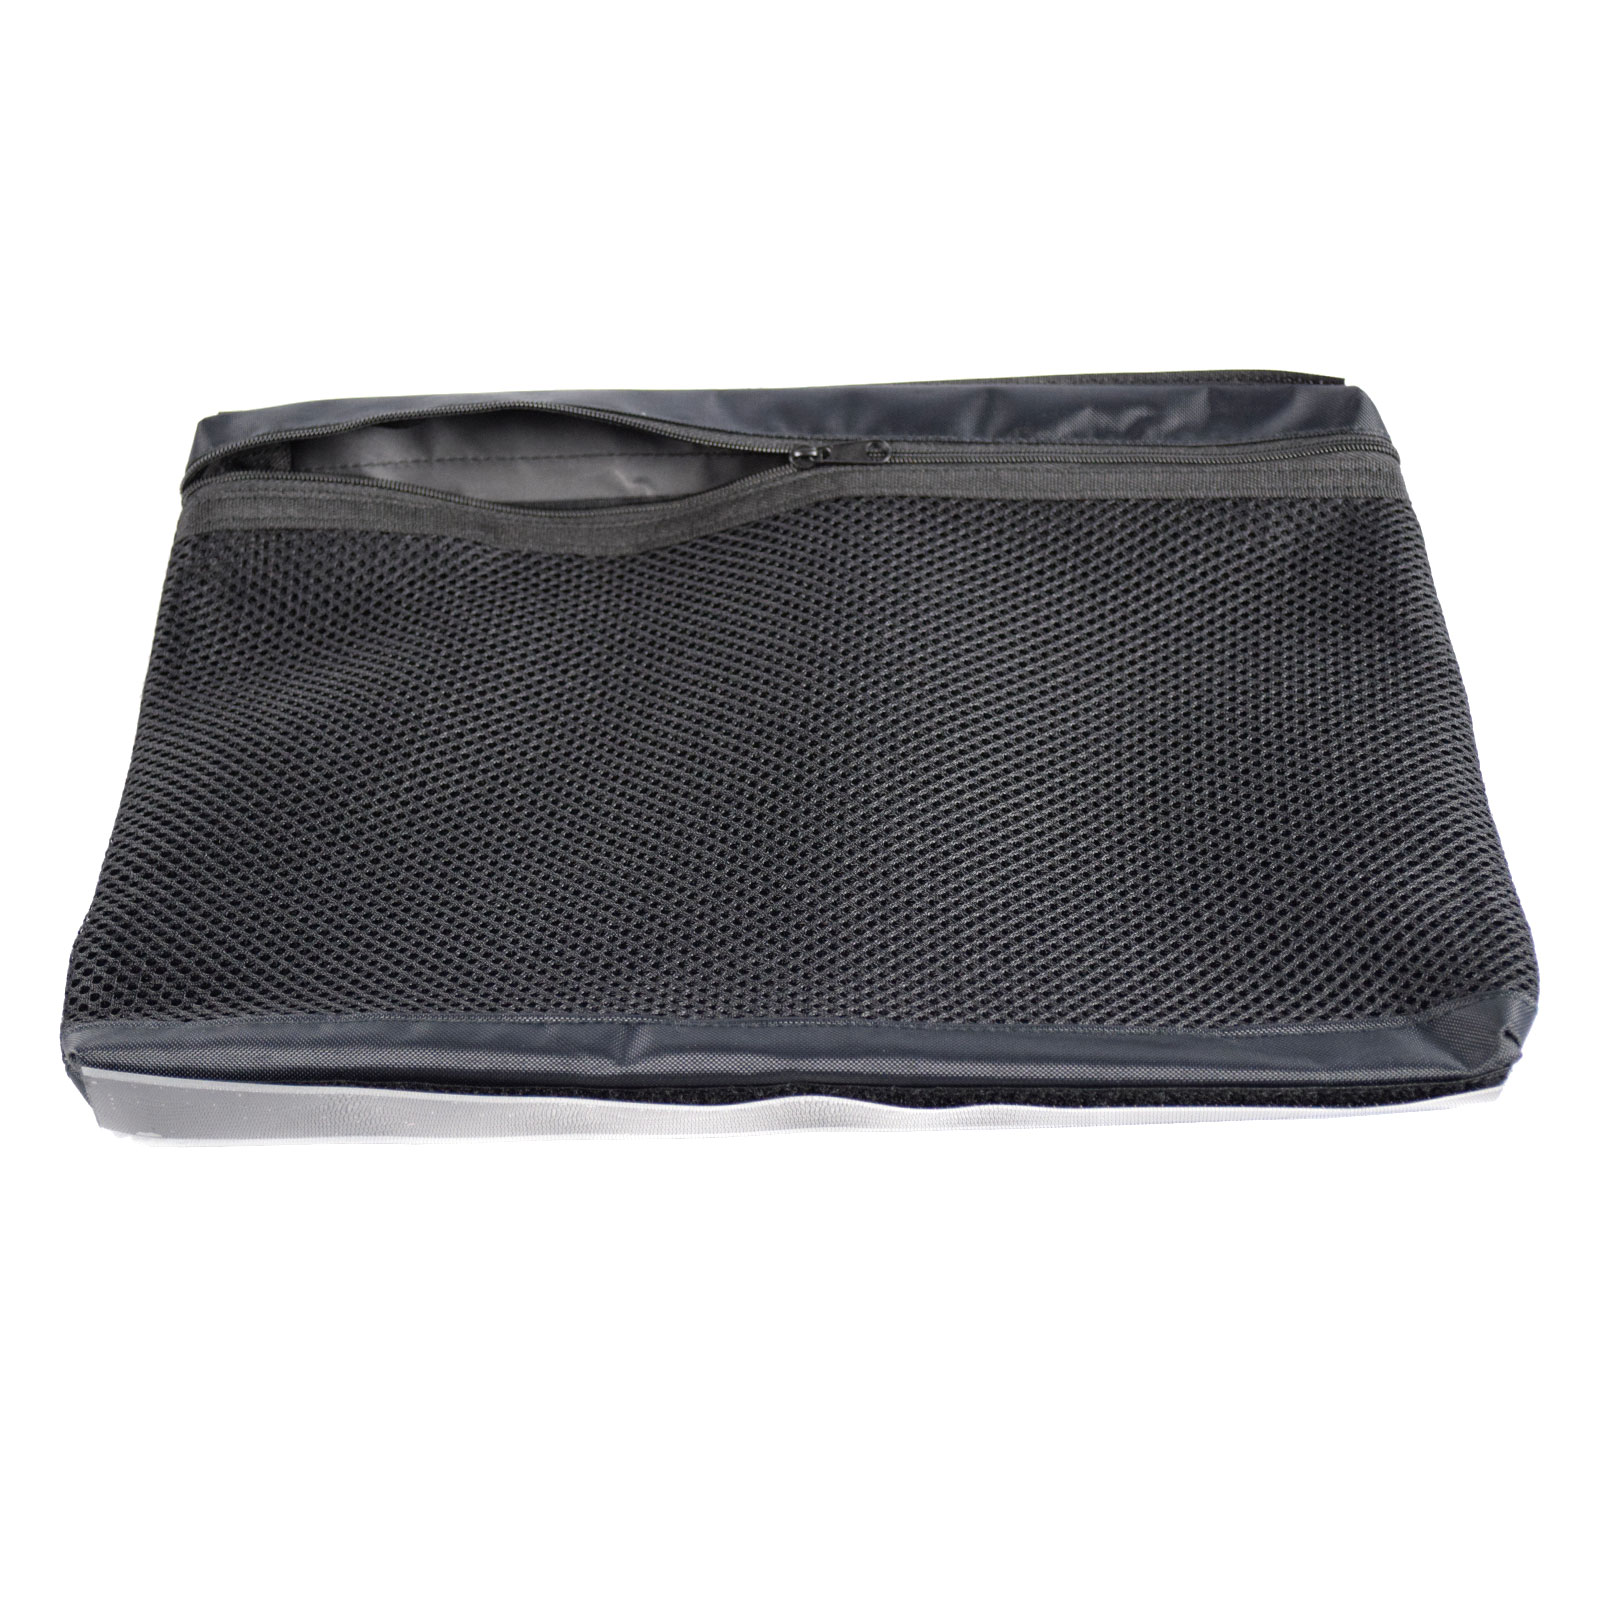 B&W Netz-Deckeltasche für Outdoor Cases, Typ 5000 / 5500